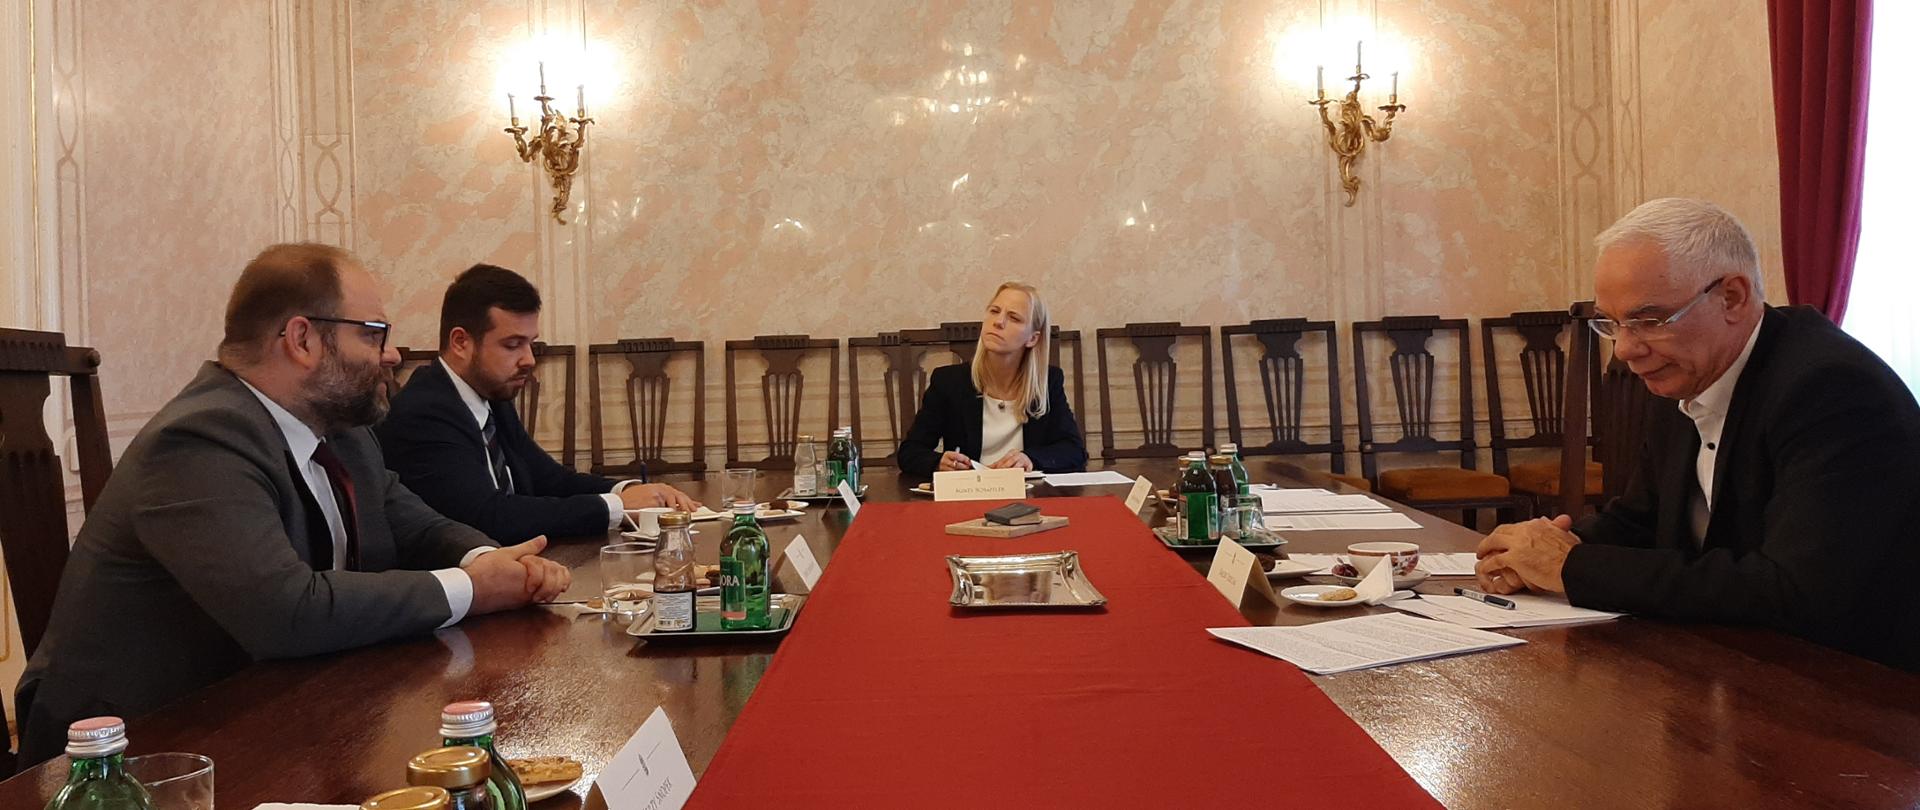 Lewandowski miniszterhelyettes látogatása Magyarországon